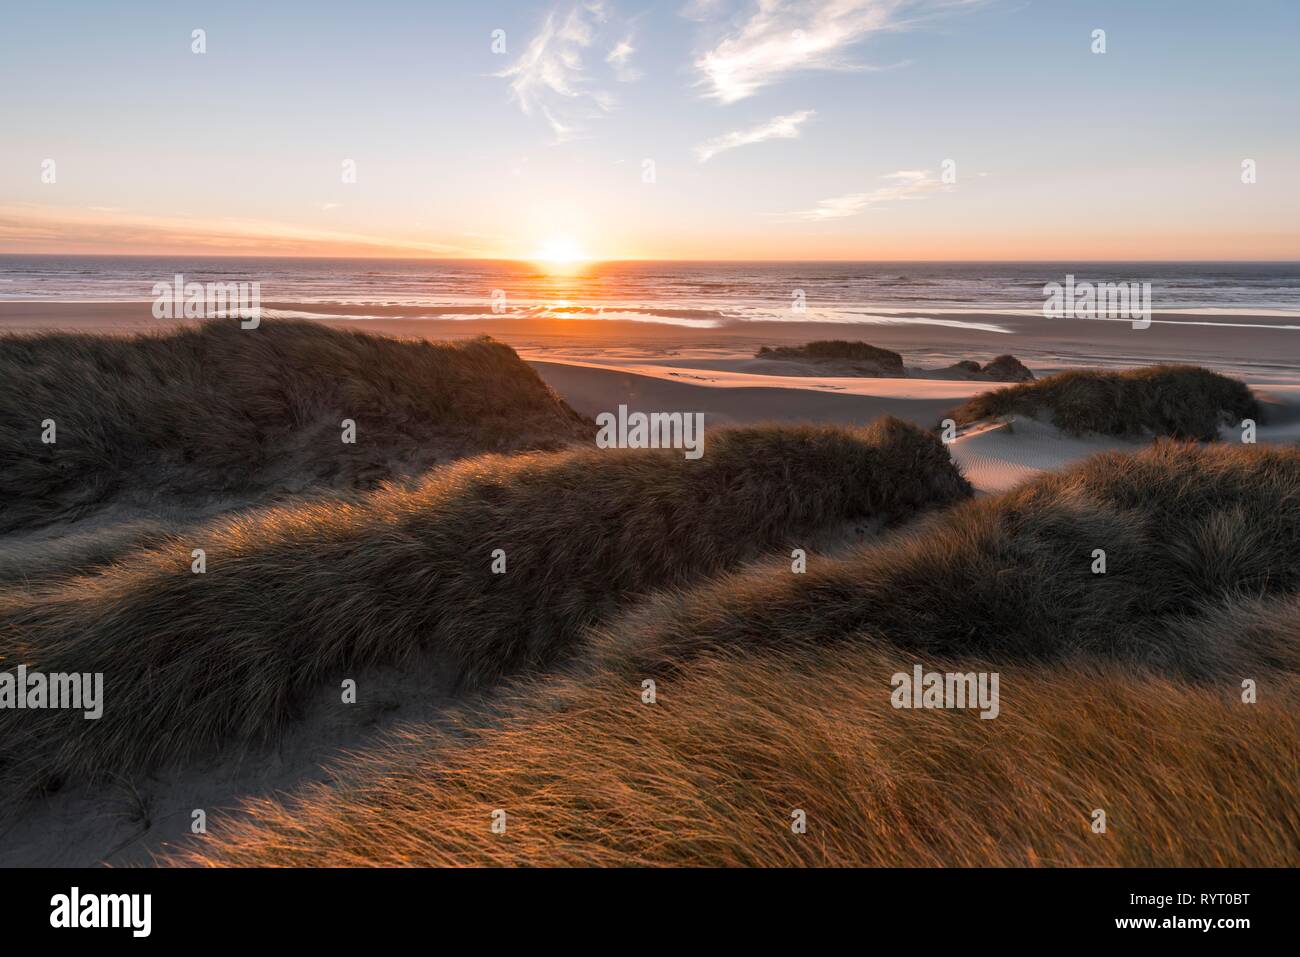 Coucher de soleil, plage de sable avec des dunes de sable de la côte, l'Aulne Dune, Baker Beach, point de vue Holman Vista, California, USA Banque D'Images